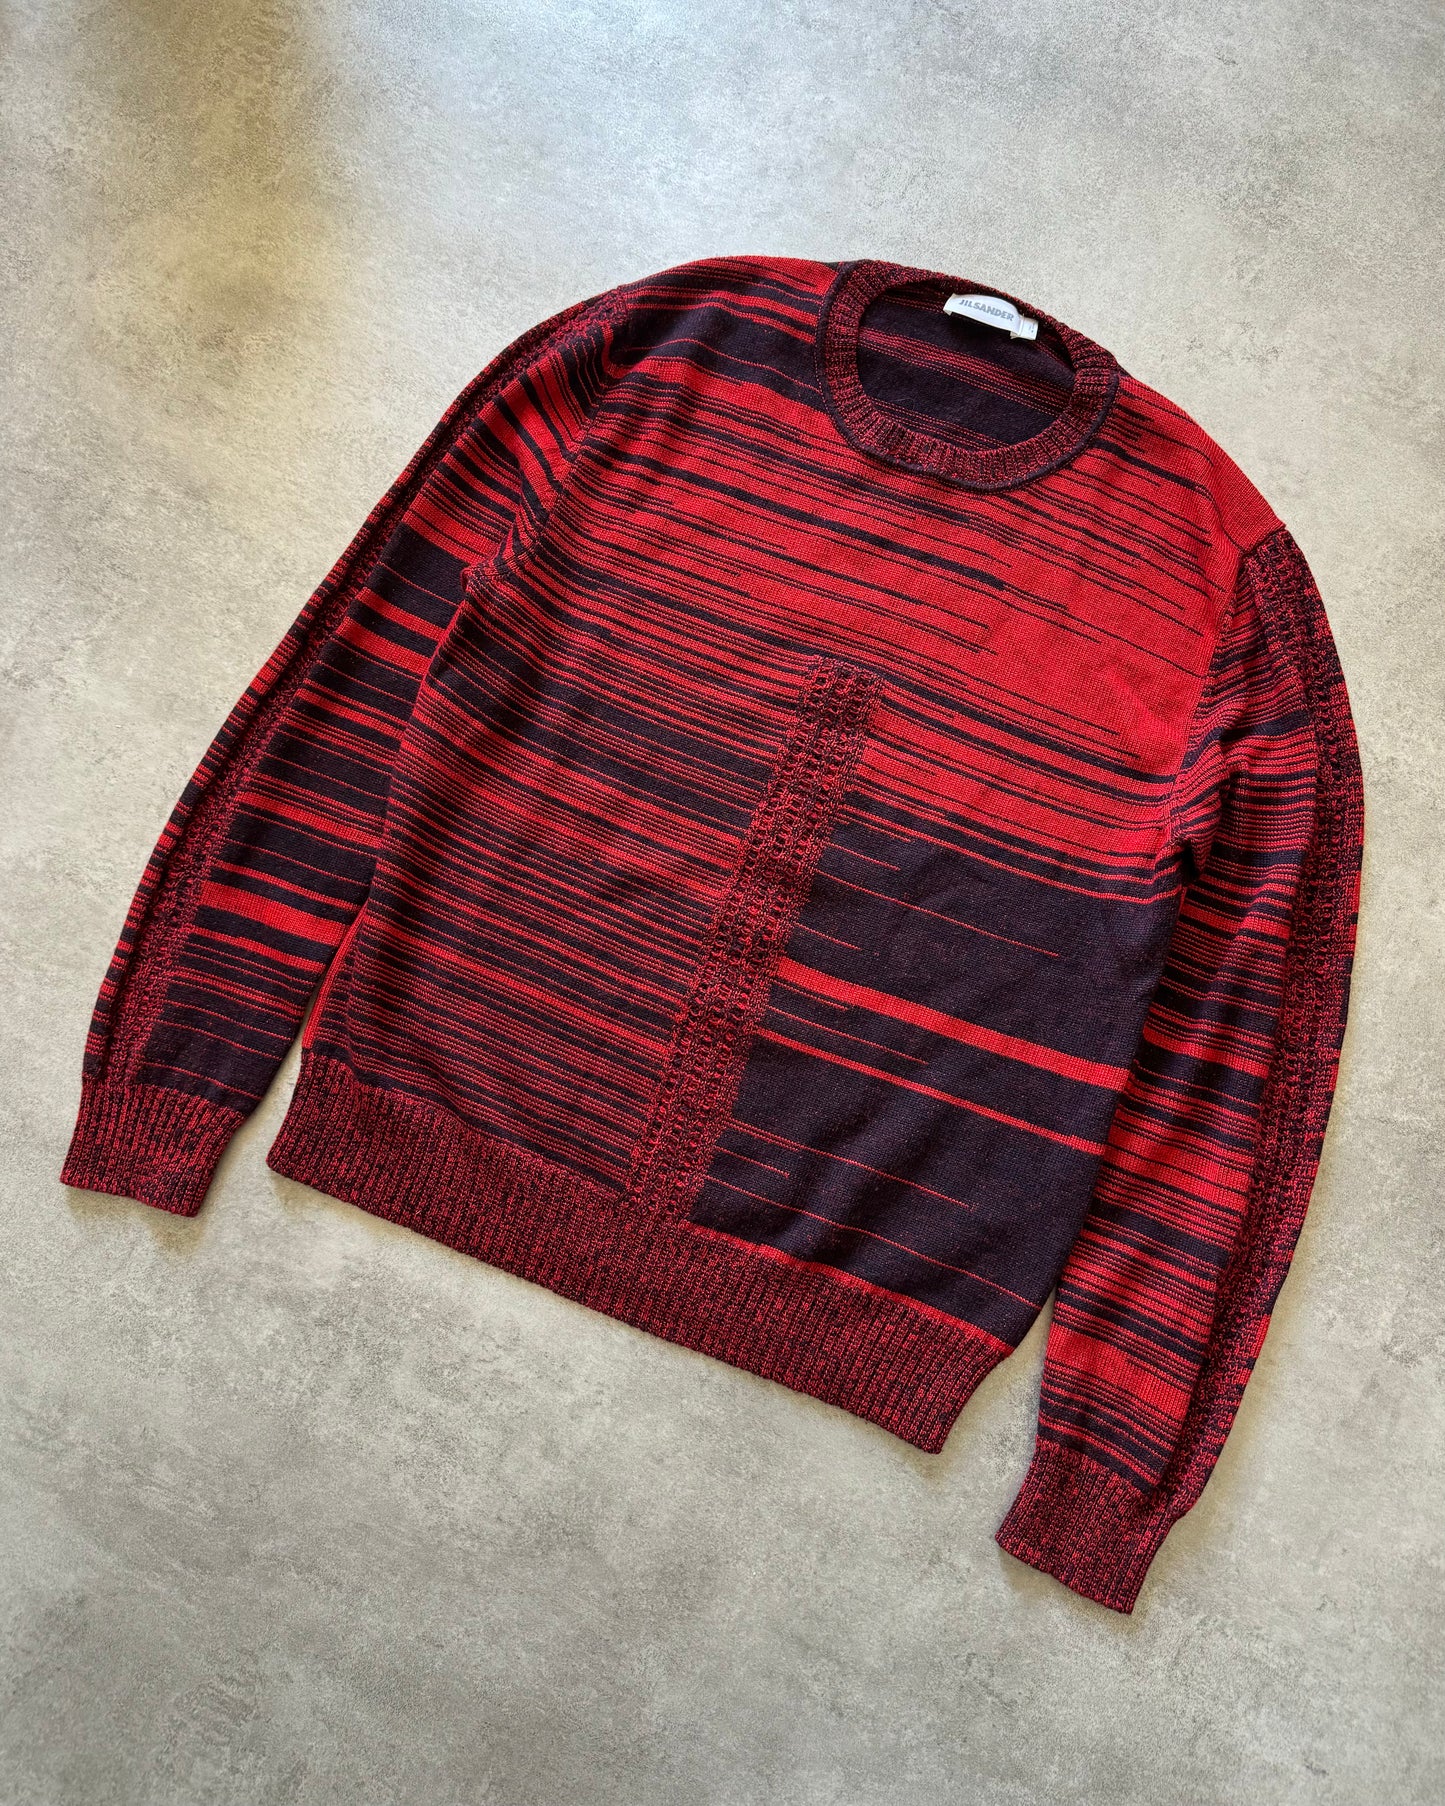 2010s Jil Sander Striped Devil Sweater  (L) - 3